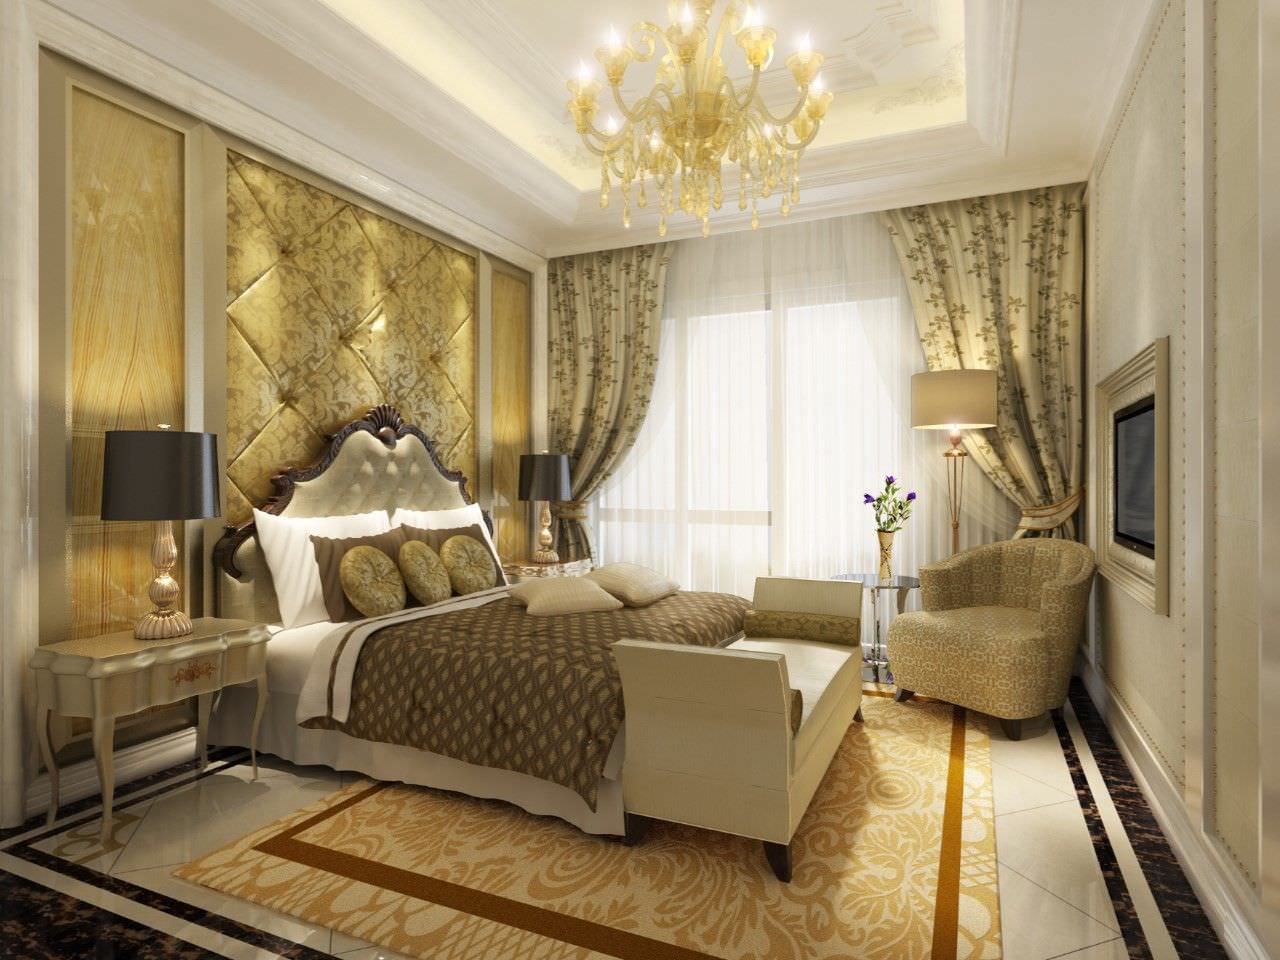 Thiết kế phòng ngủ master phong cách cổ điển với màu vàng ánh kim đẹp sang trọng